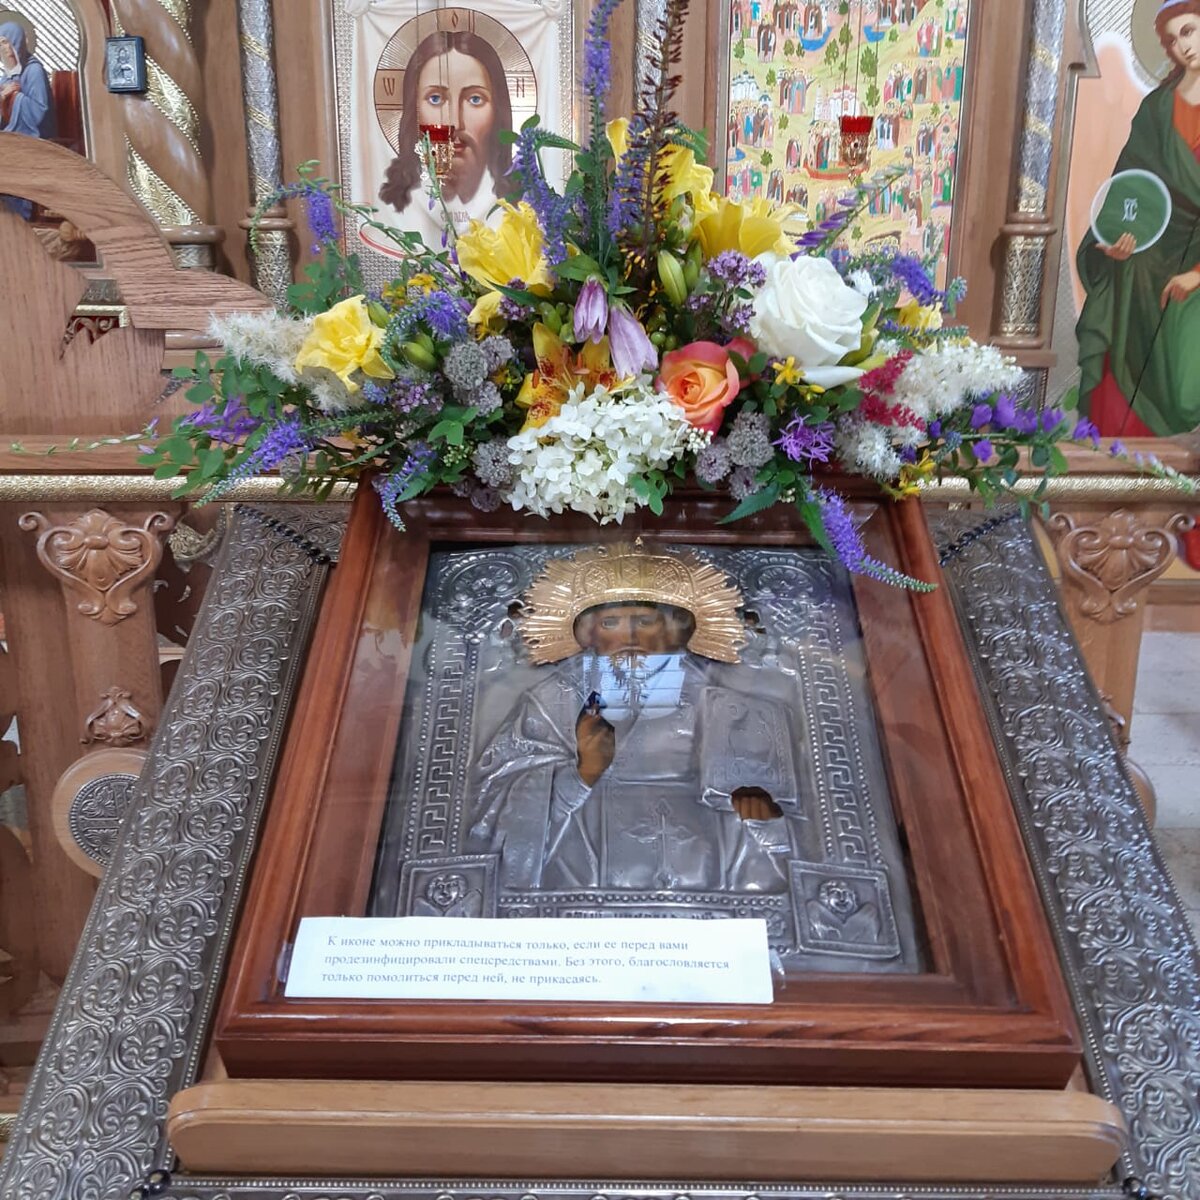 Цветы для Божией Матери: в Ново-Тихвинской обители встретят Тихвинскую икону дорогой из цветов